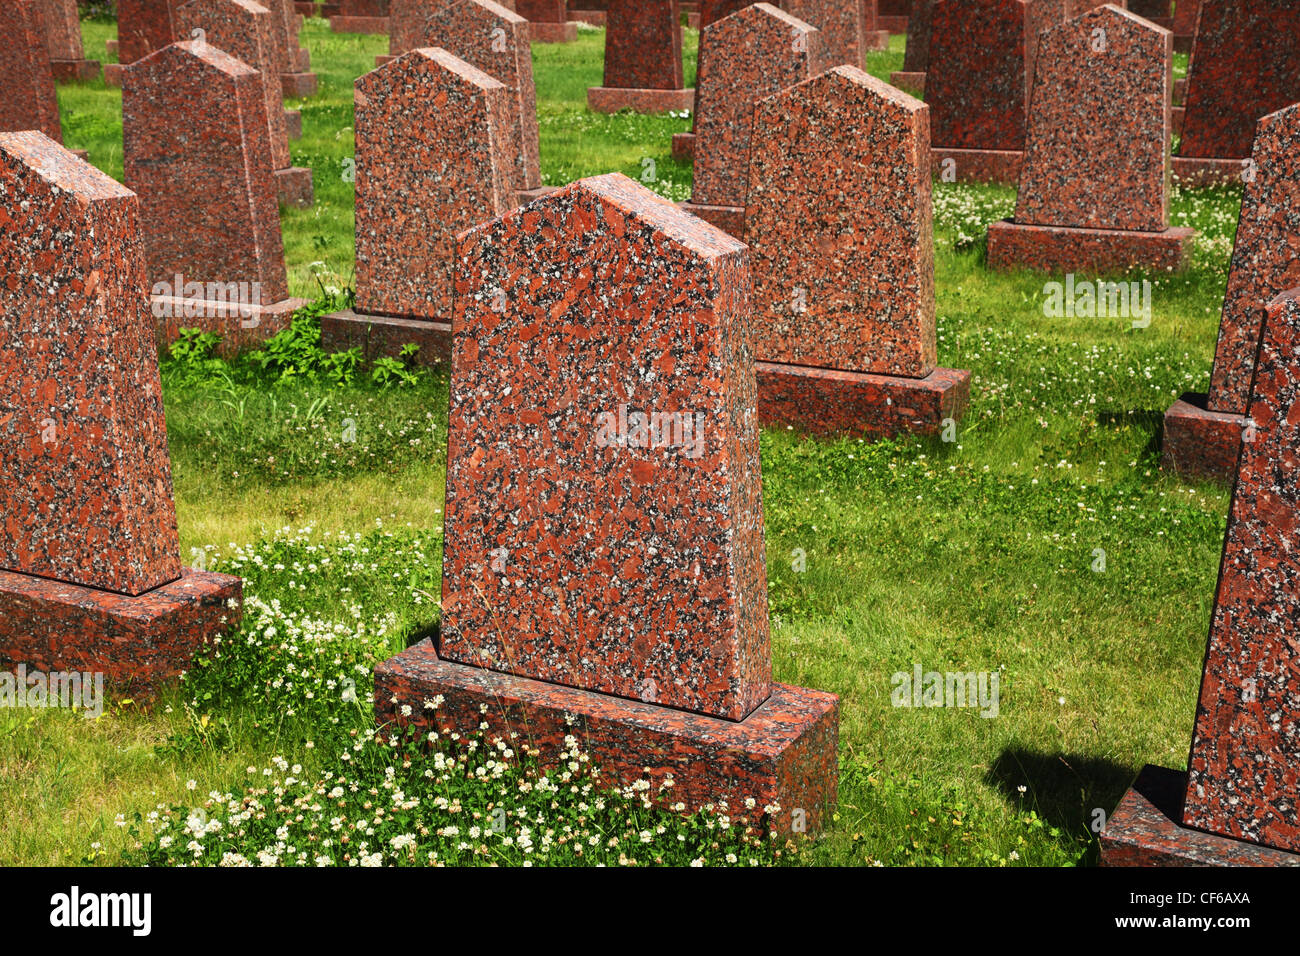 Gli obelischi di granito rosso in piedi in erba verde presso il sacrario militare Foto Stock